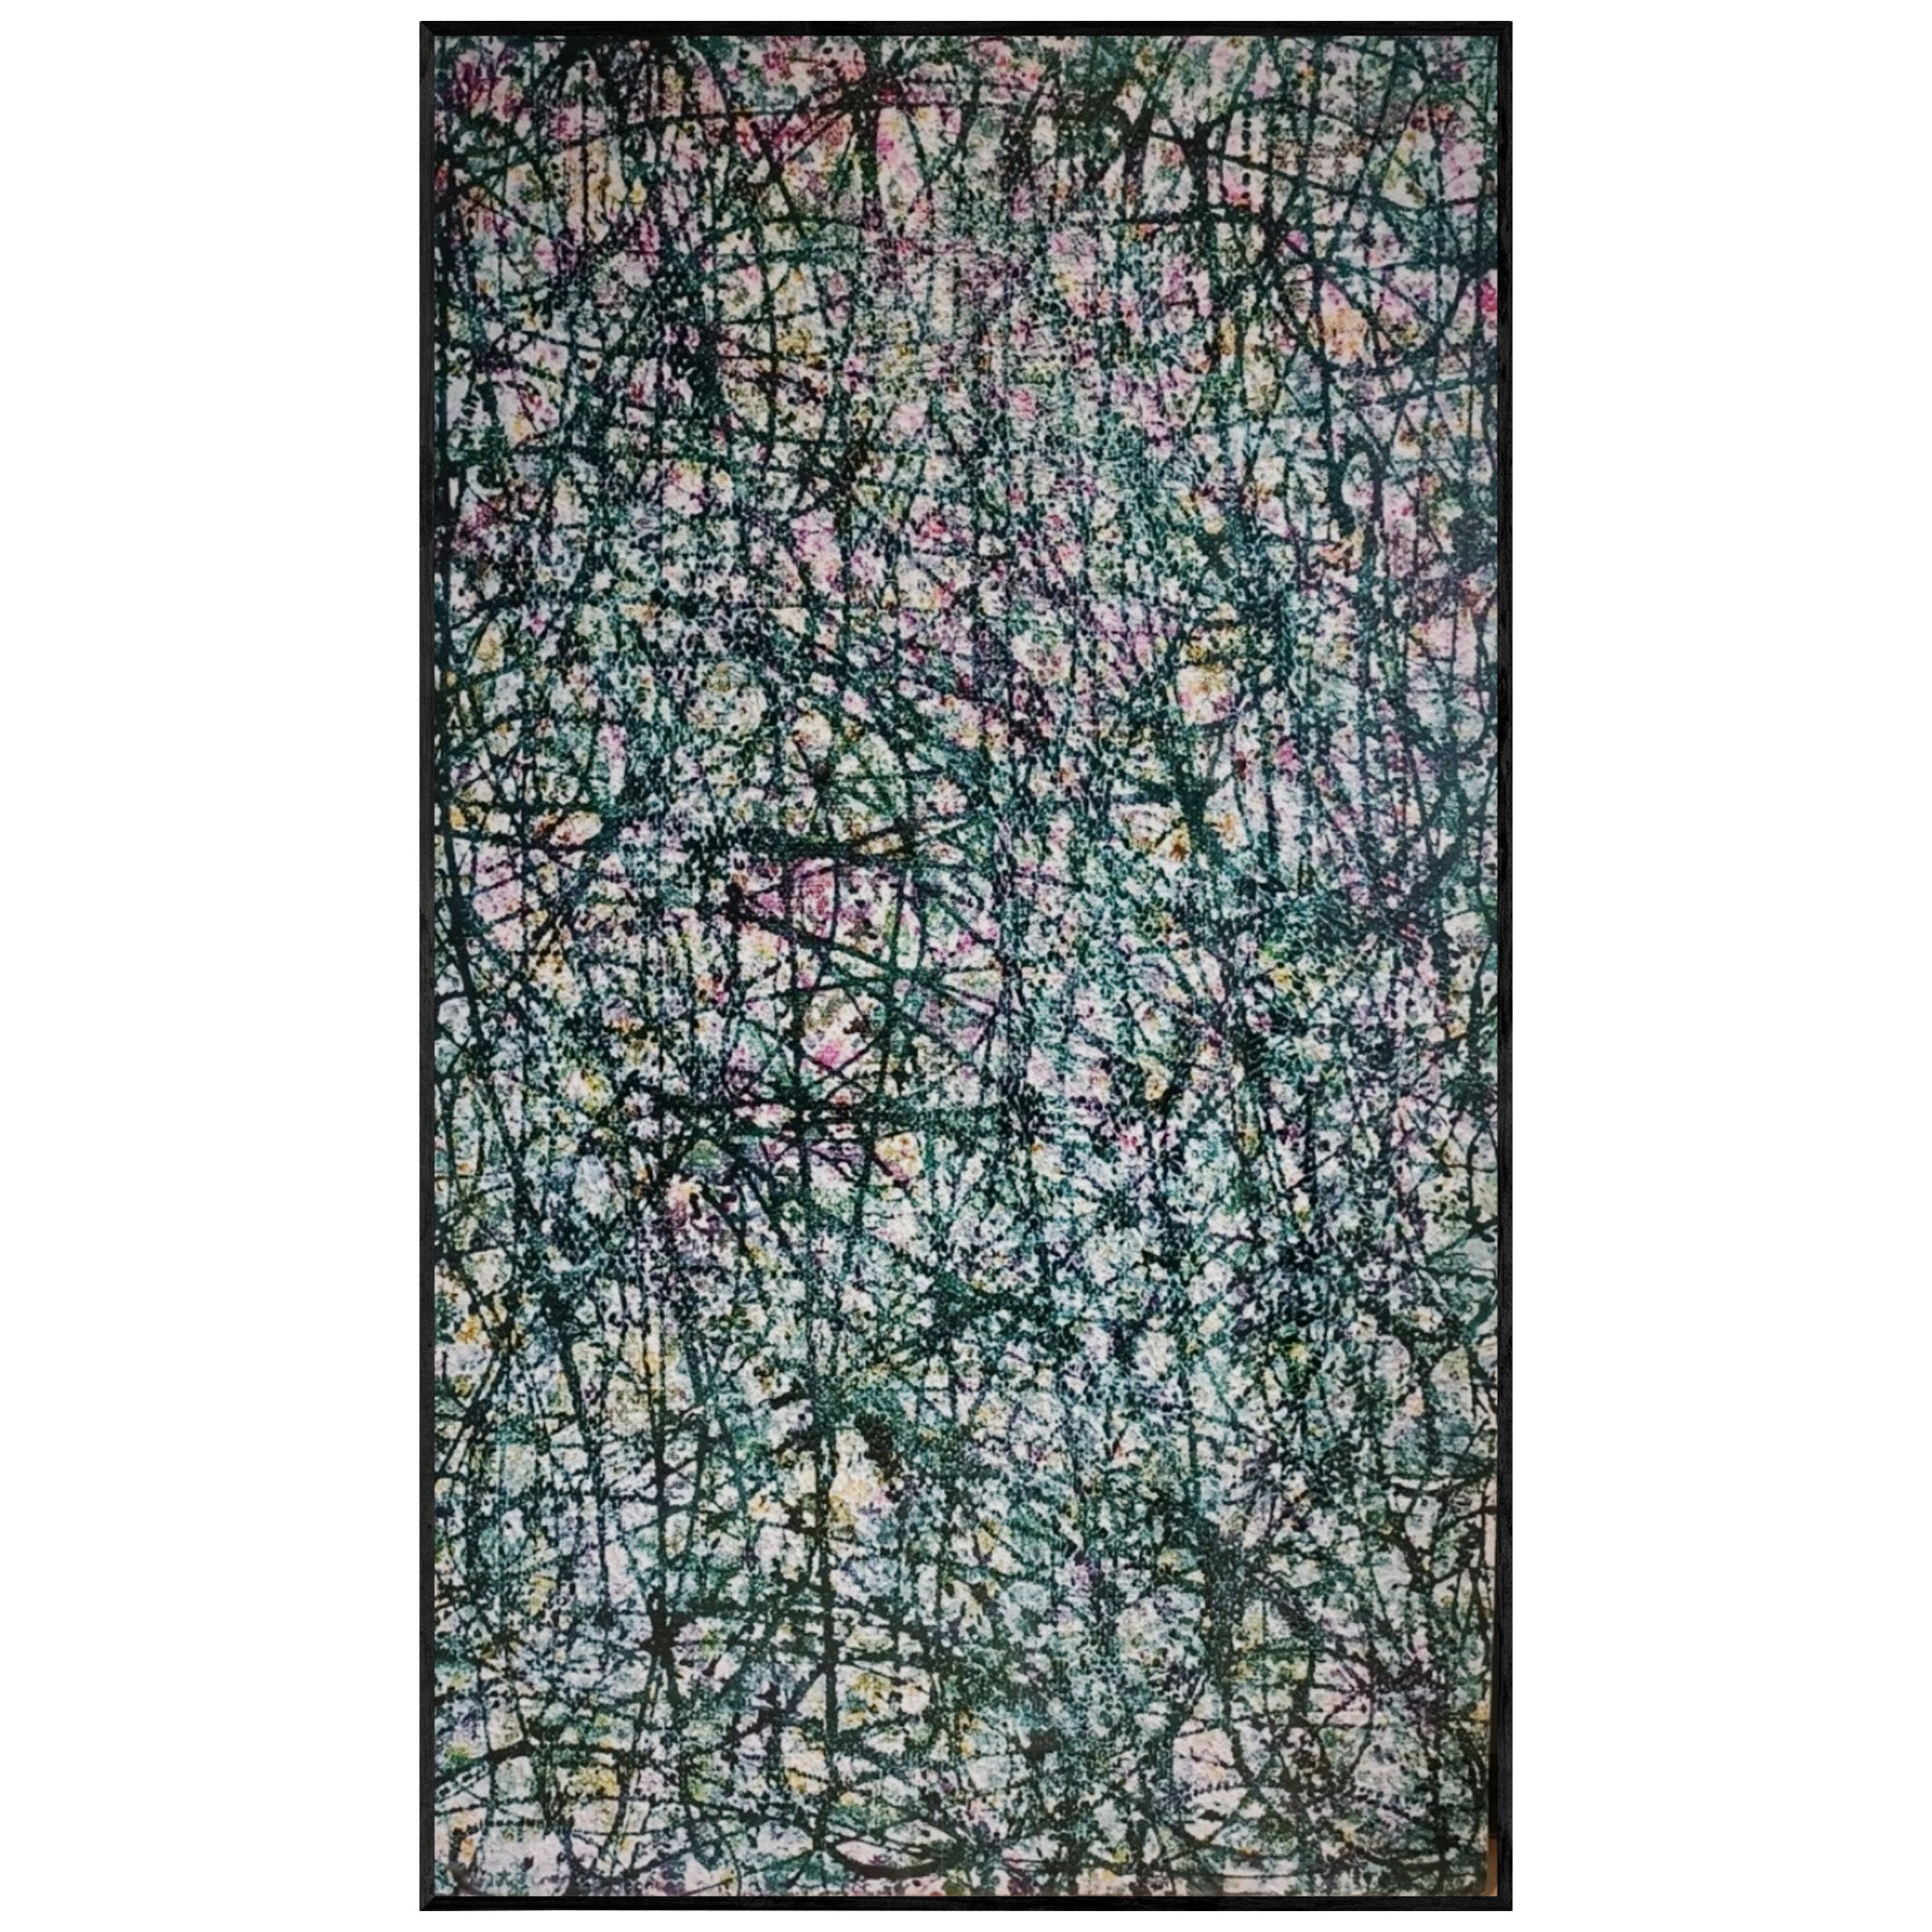 La peinture abstraite contemporaine dans le goût de Jackson Pollock et de Larry Poons